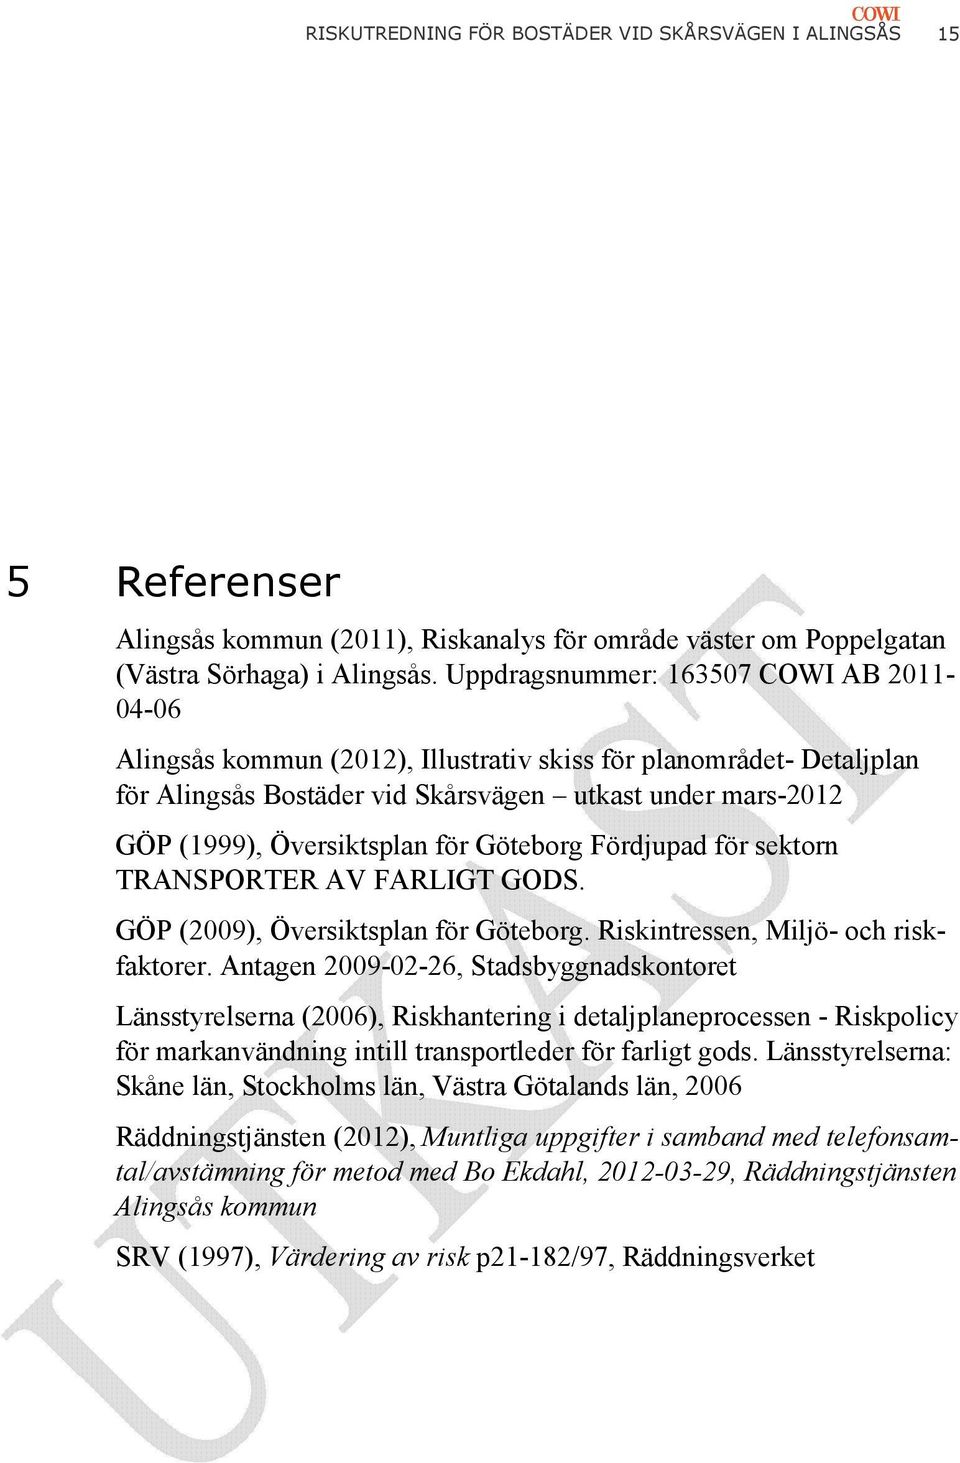 för Göteborg Fördjupad för sektorn TRANSPORTER AV FARLIGT GODS. GÖP (2009), Översiktsplan för Göteborg. Riskintressen, Miljö- och riskfaktorer.